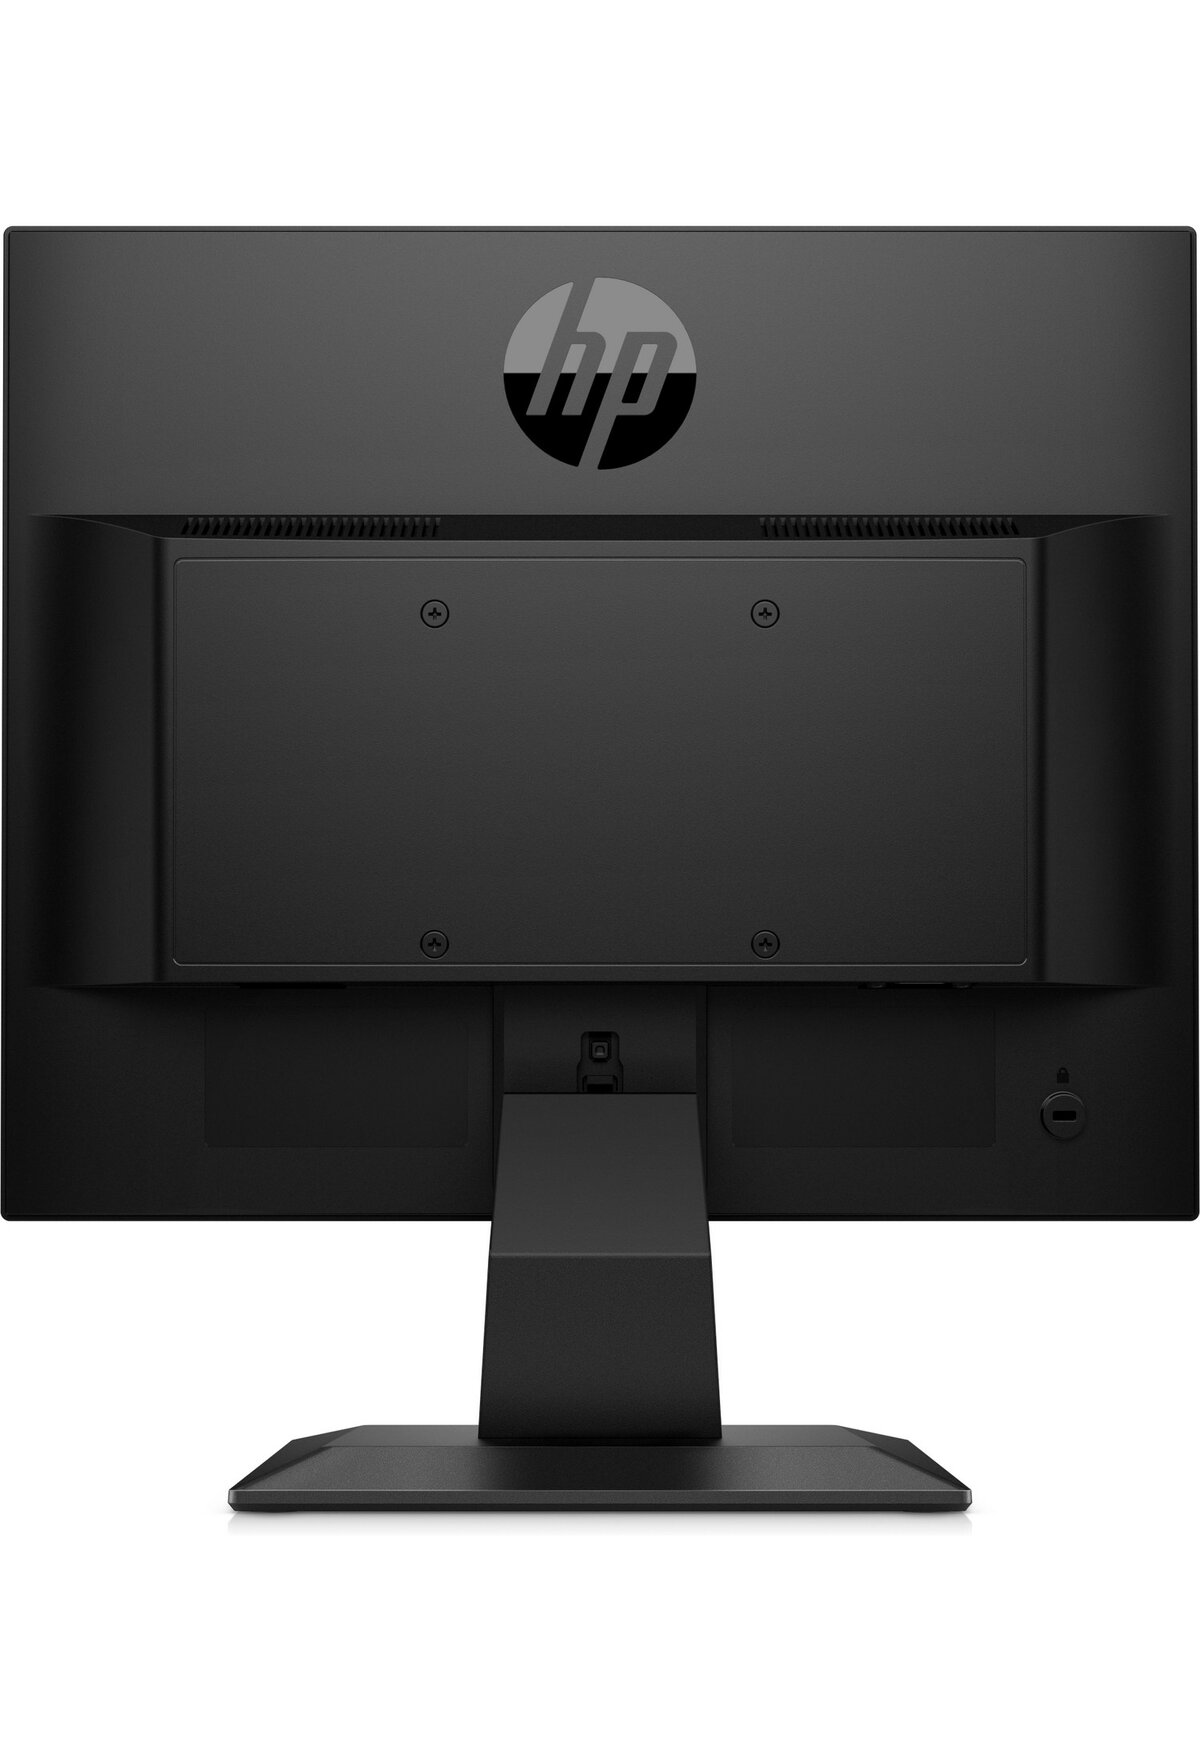 HP P174 Monitor